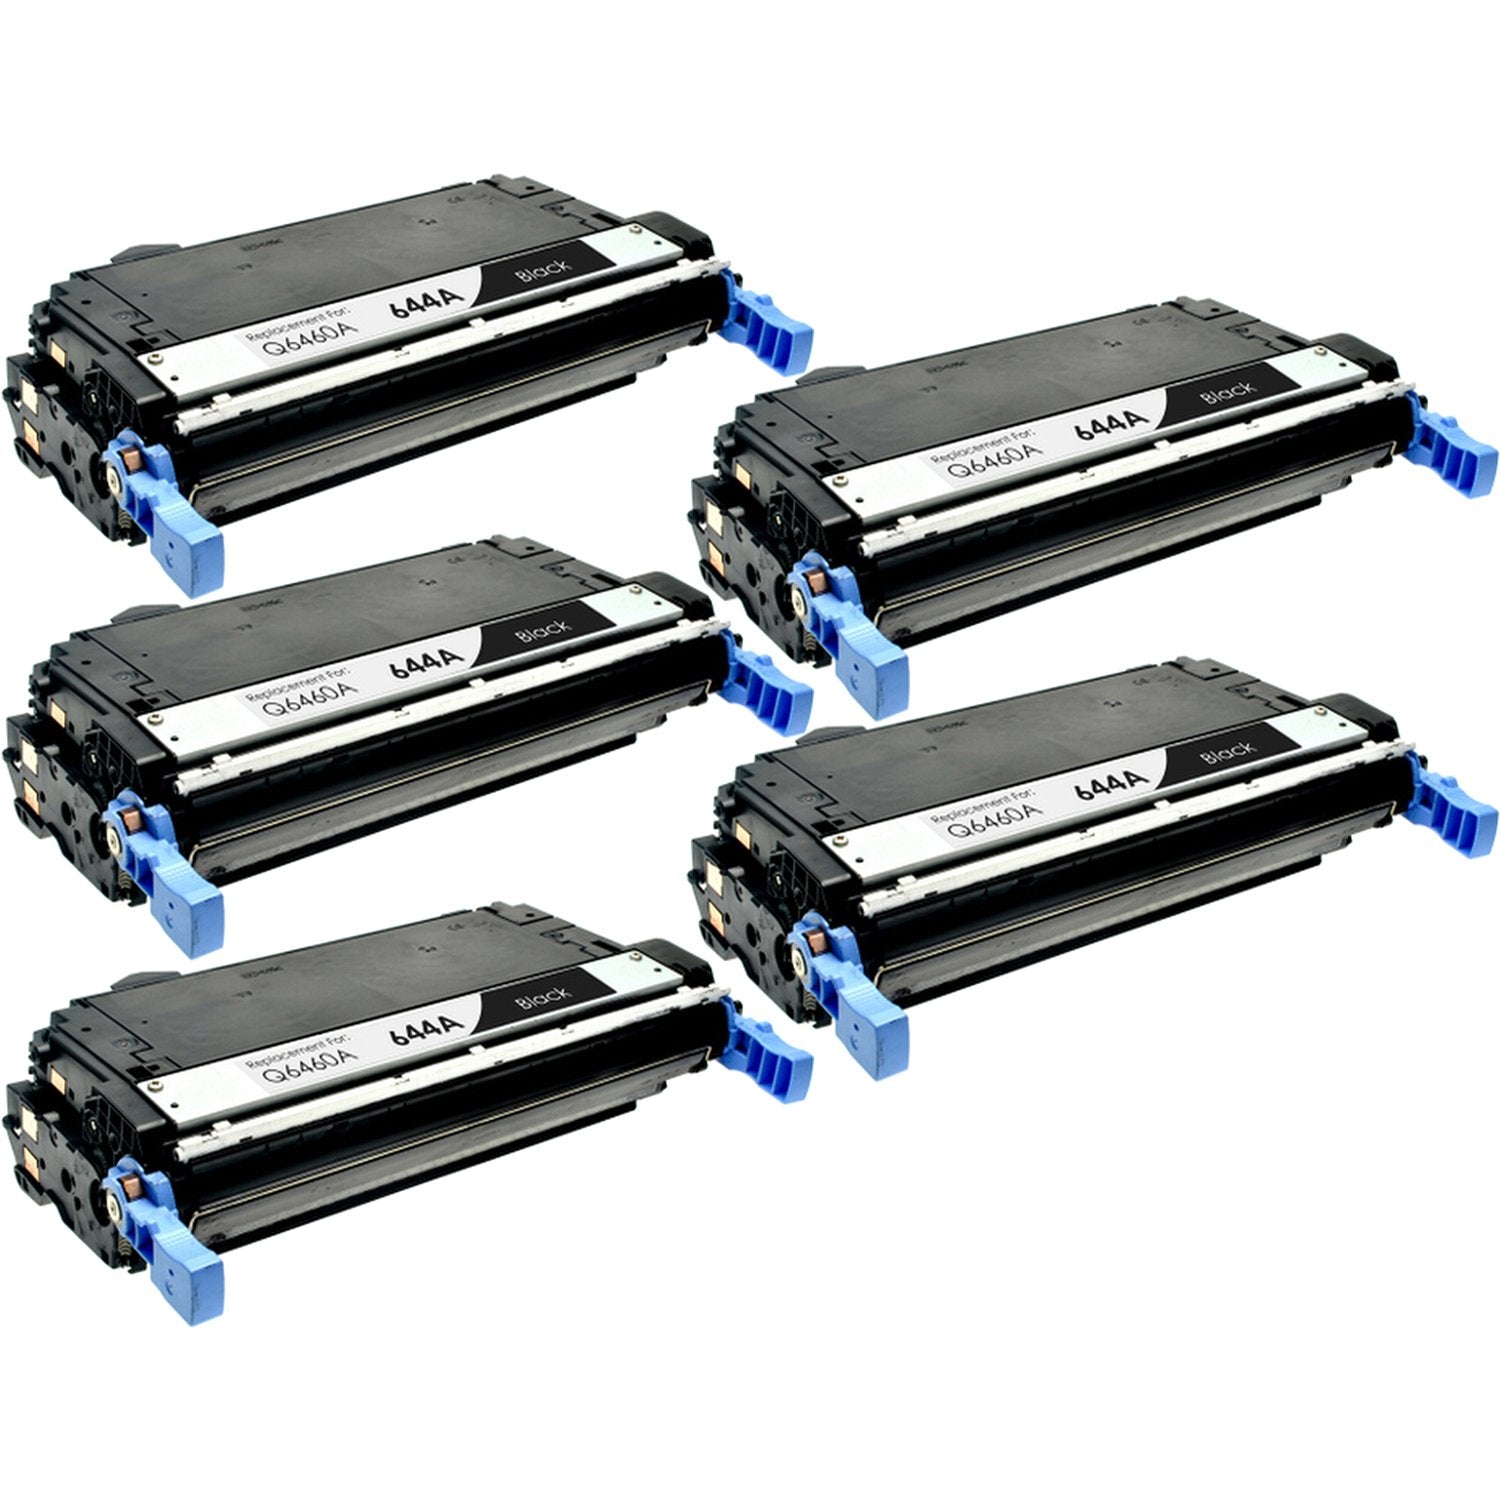 Absolute Toner Compatible HP 644A (Q6460A) Black Toner Cartridge | Absolute Toner HP Toner Cartridges